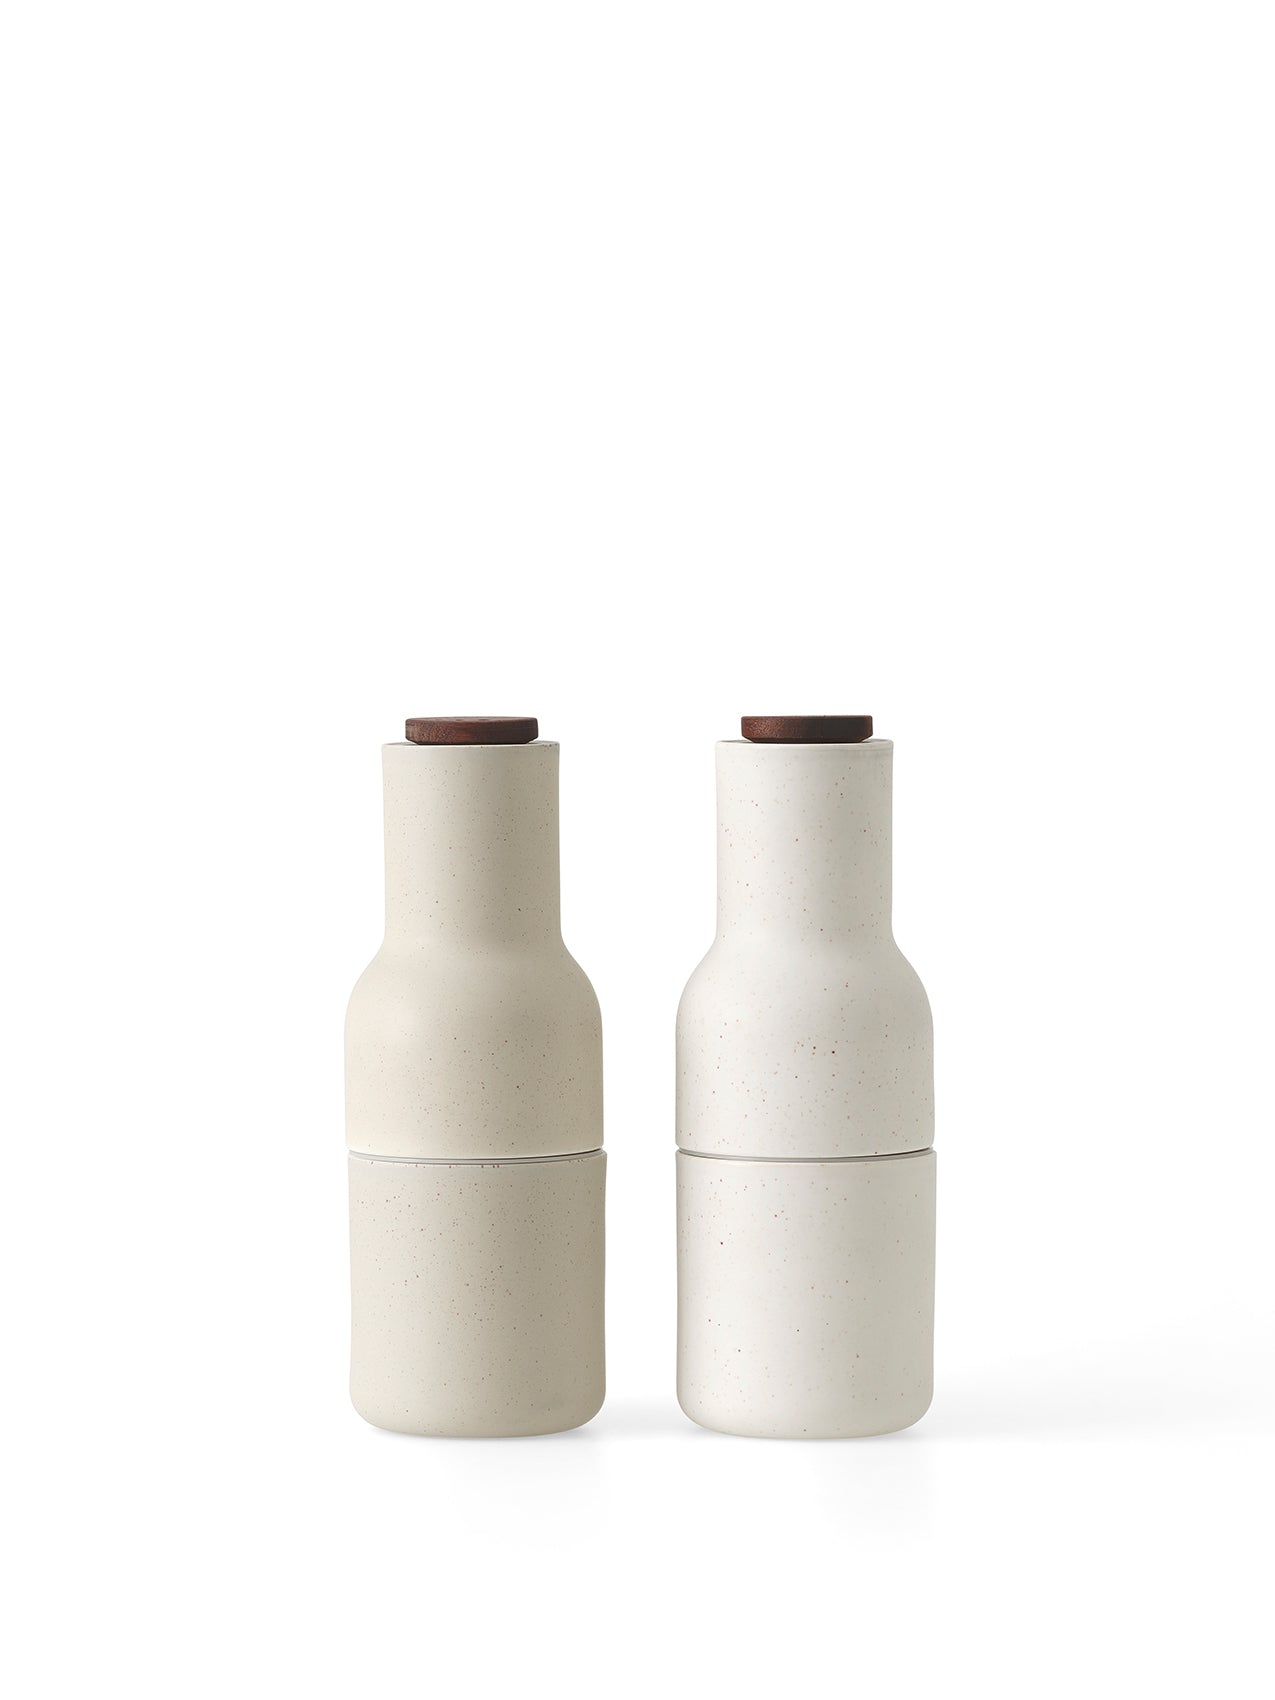 Menu - Salt og Peberkværn - Bottle Grinder - Ceramic Sand - – Room for More